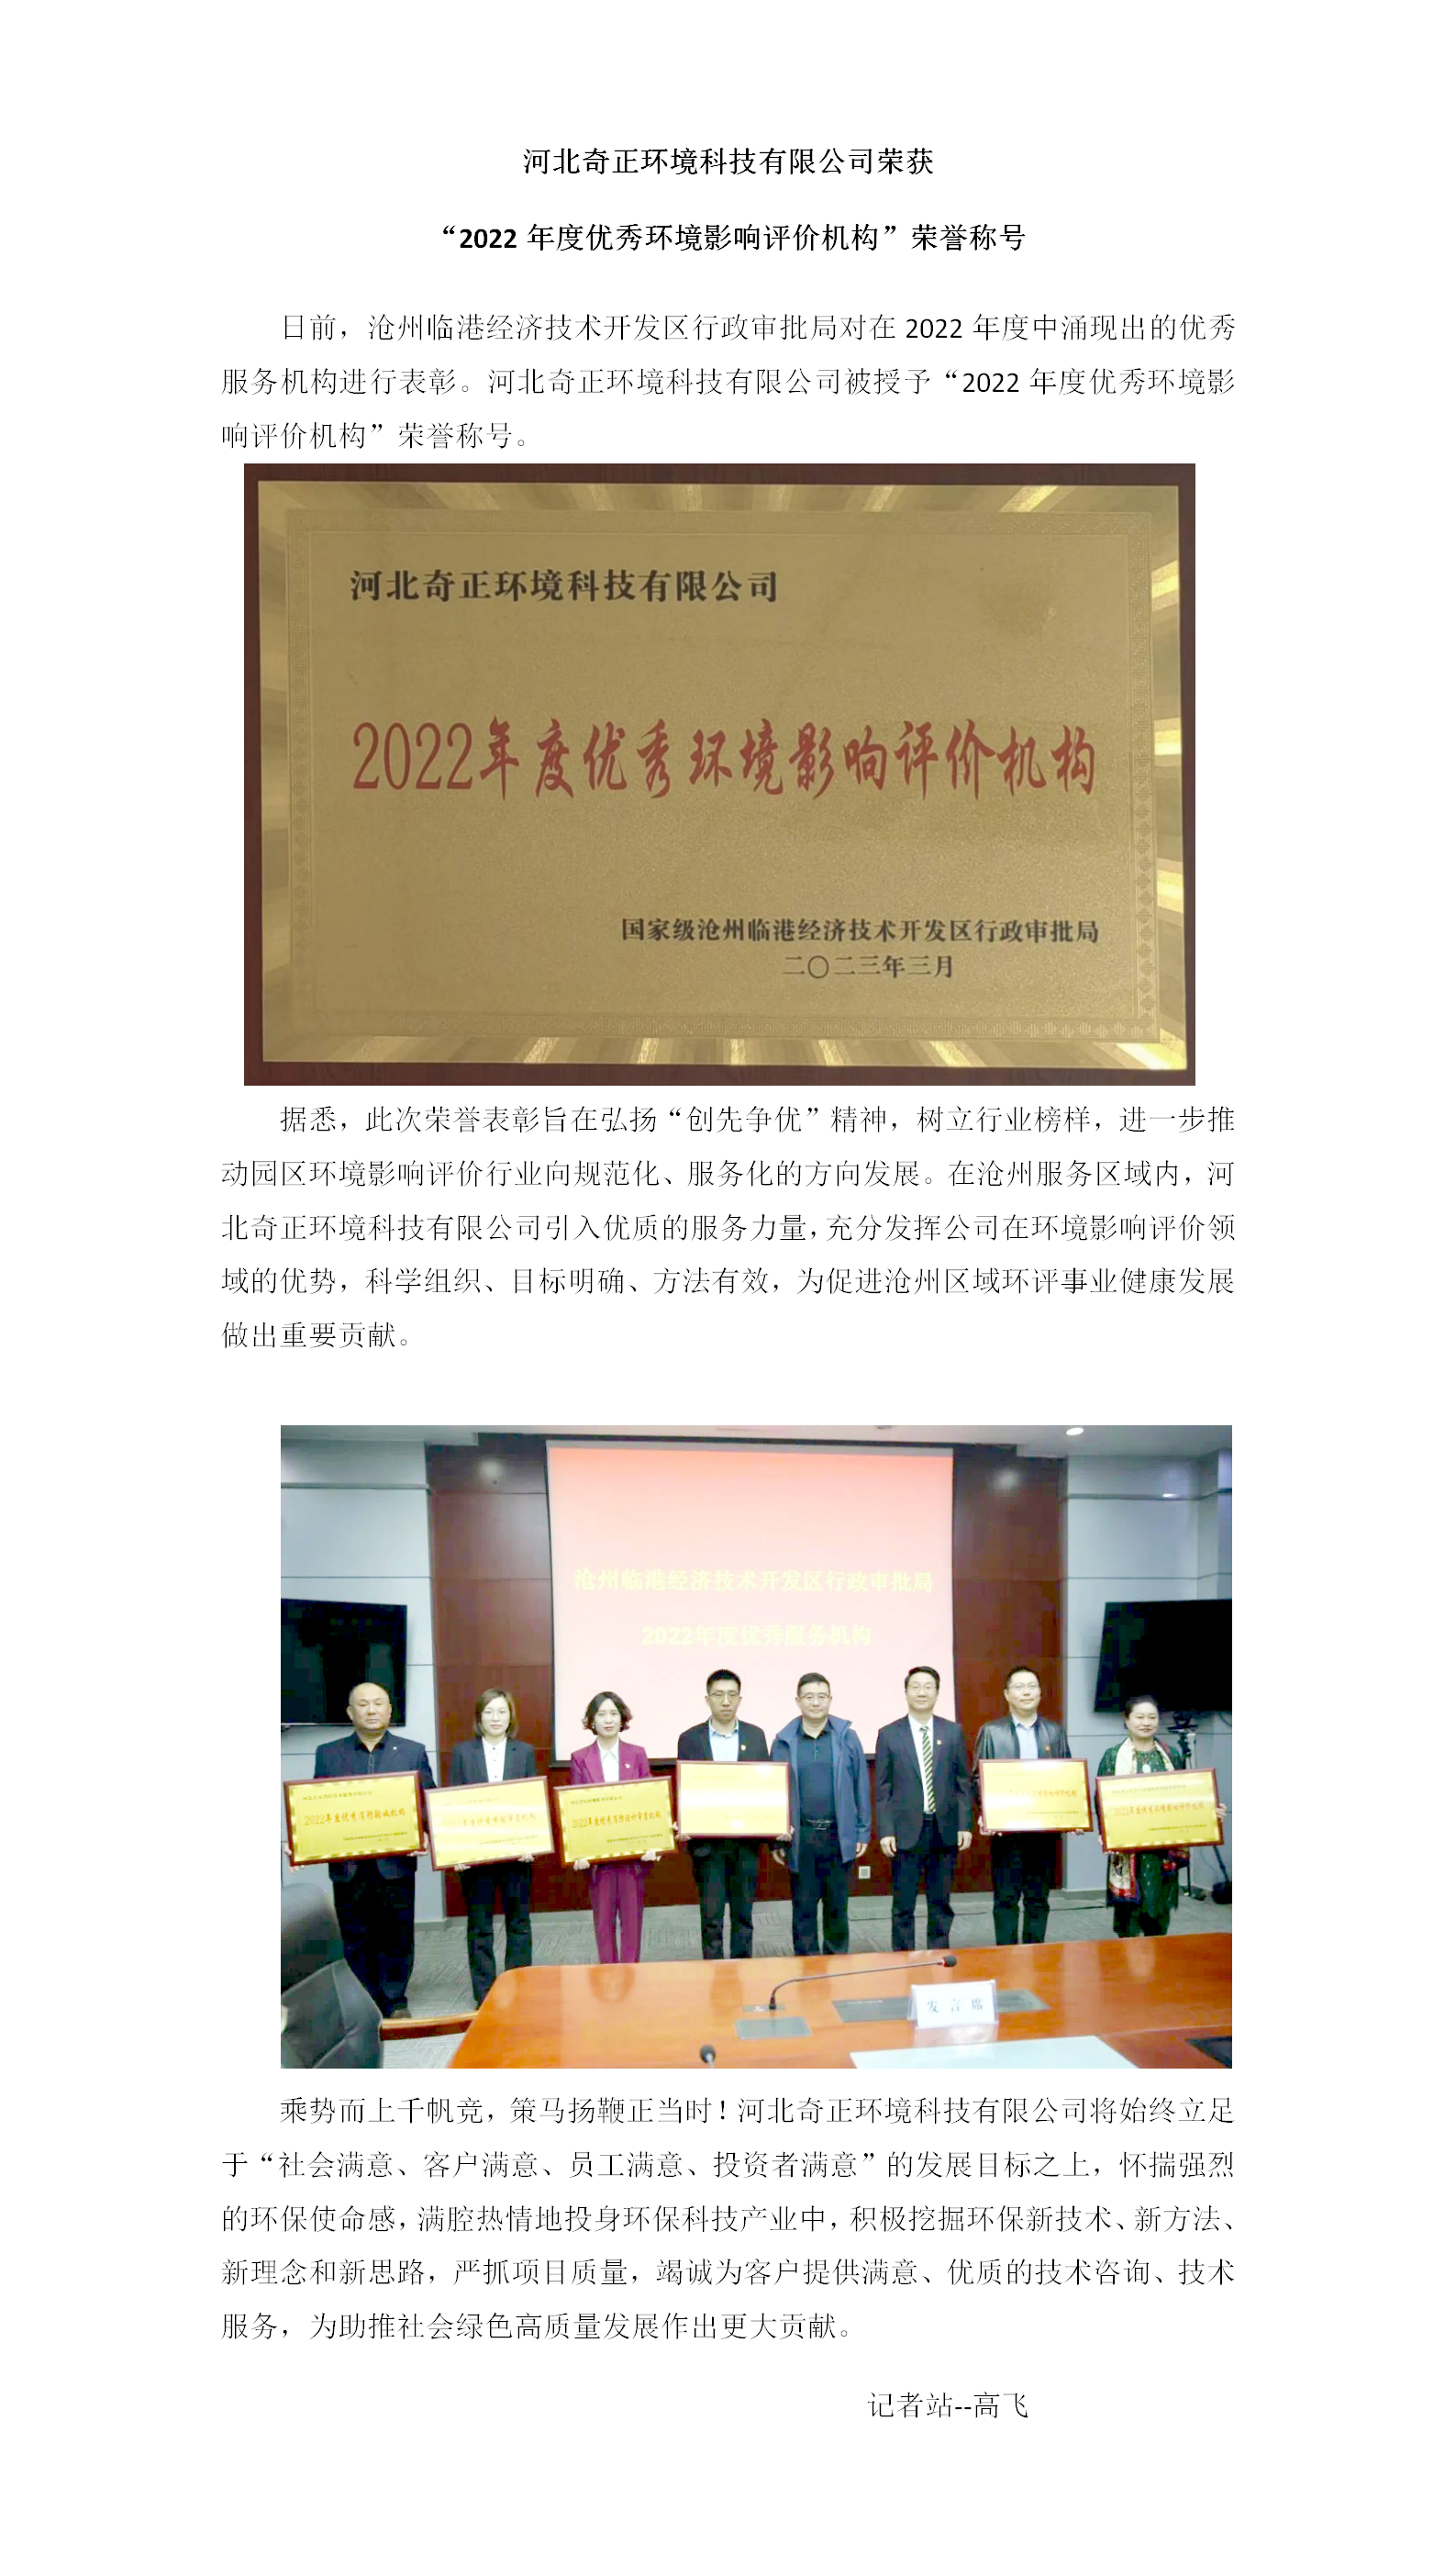 河北Ok138大阳城集团娱乐平台荣获“2022年度优秀环境影响评价机构”荣誉称号4.11_01.png